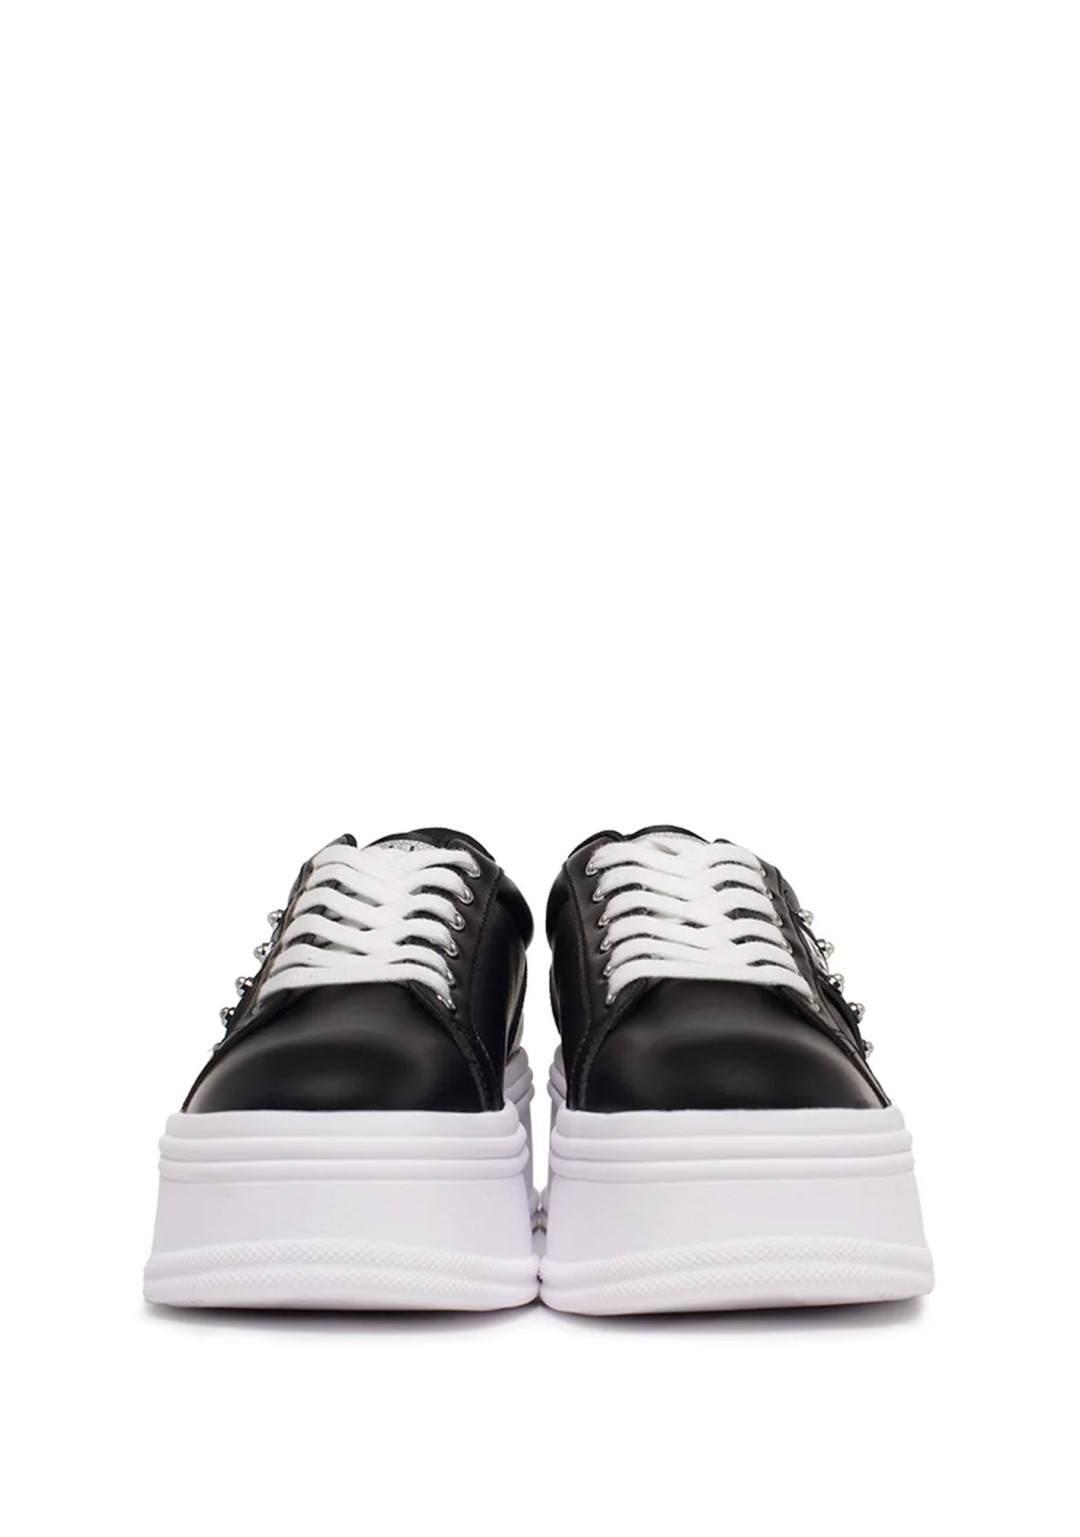 LIU JO - Sneaker Borchie - Donna - BF3143 N